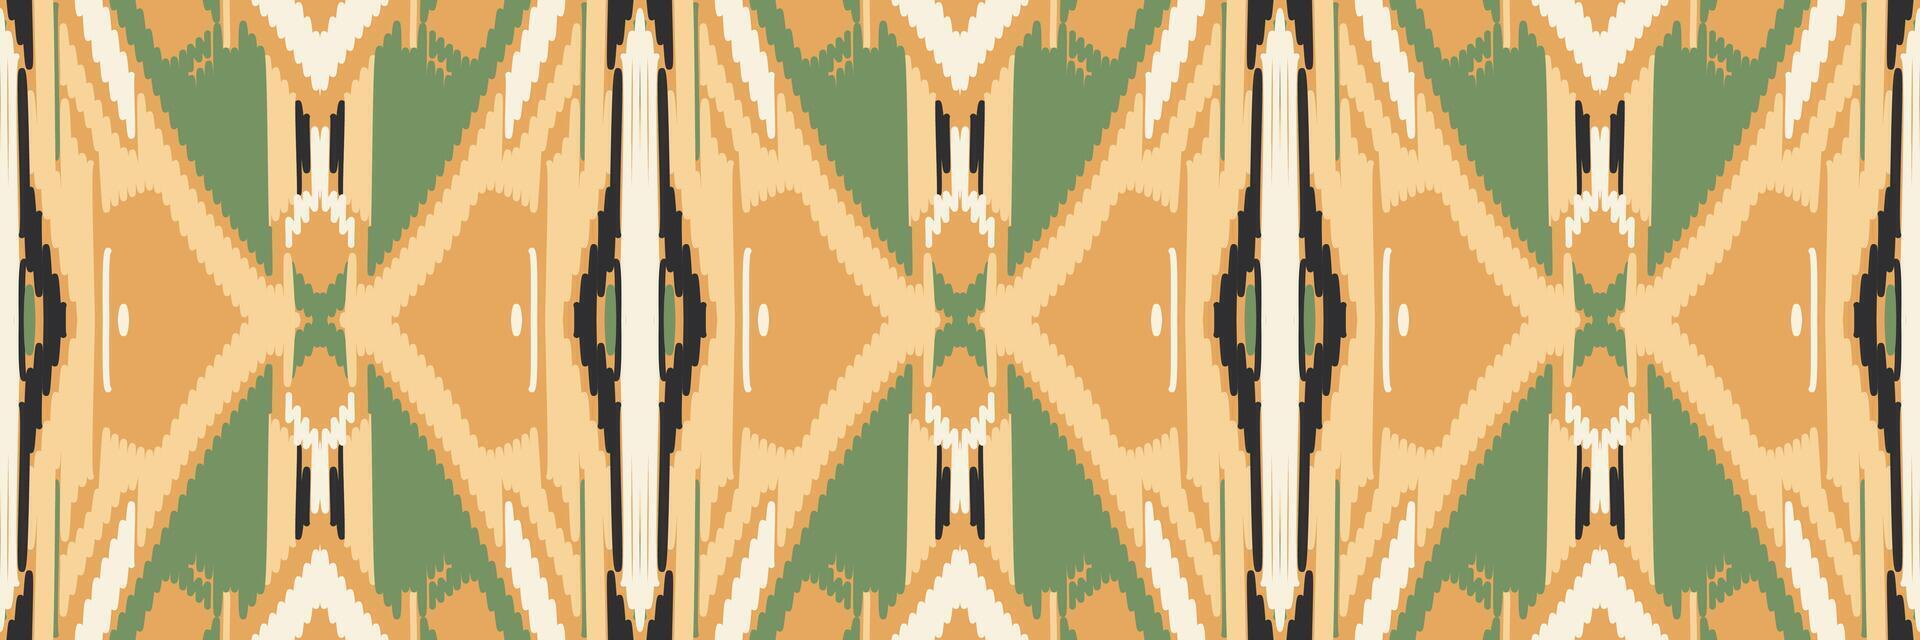 motif ethnique de broderie géométrique abstraite ikat. tapis en tissu aztèque ornement mandala chevron décoration textile papier peint. fond de vecteur traditionnel de dinde ethnique indigène boho tribal